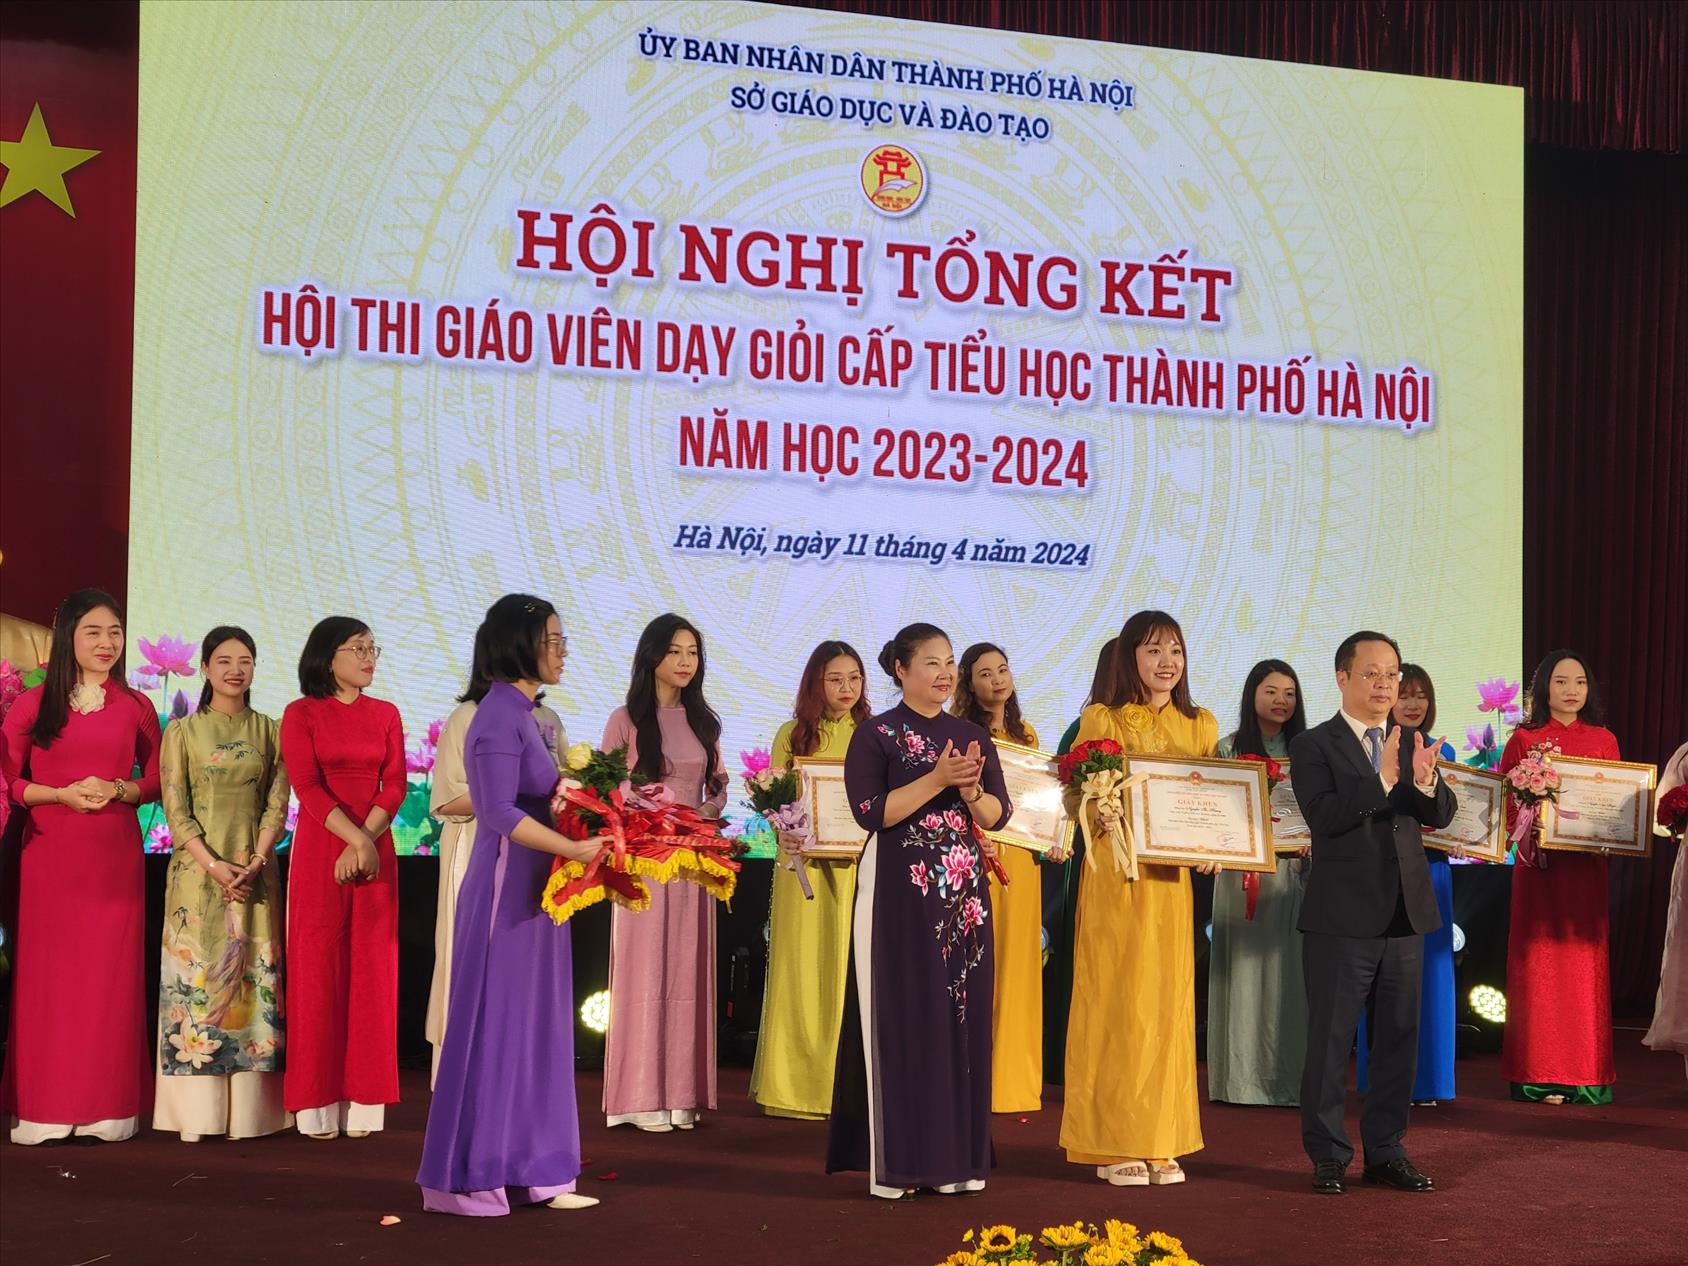 Hà Nội: Giáo viên quận Ba Đình đoạt giải Nhất "Hội thi giáo viên dạy giỏi cấp tiểu học"